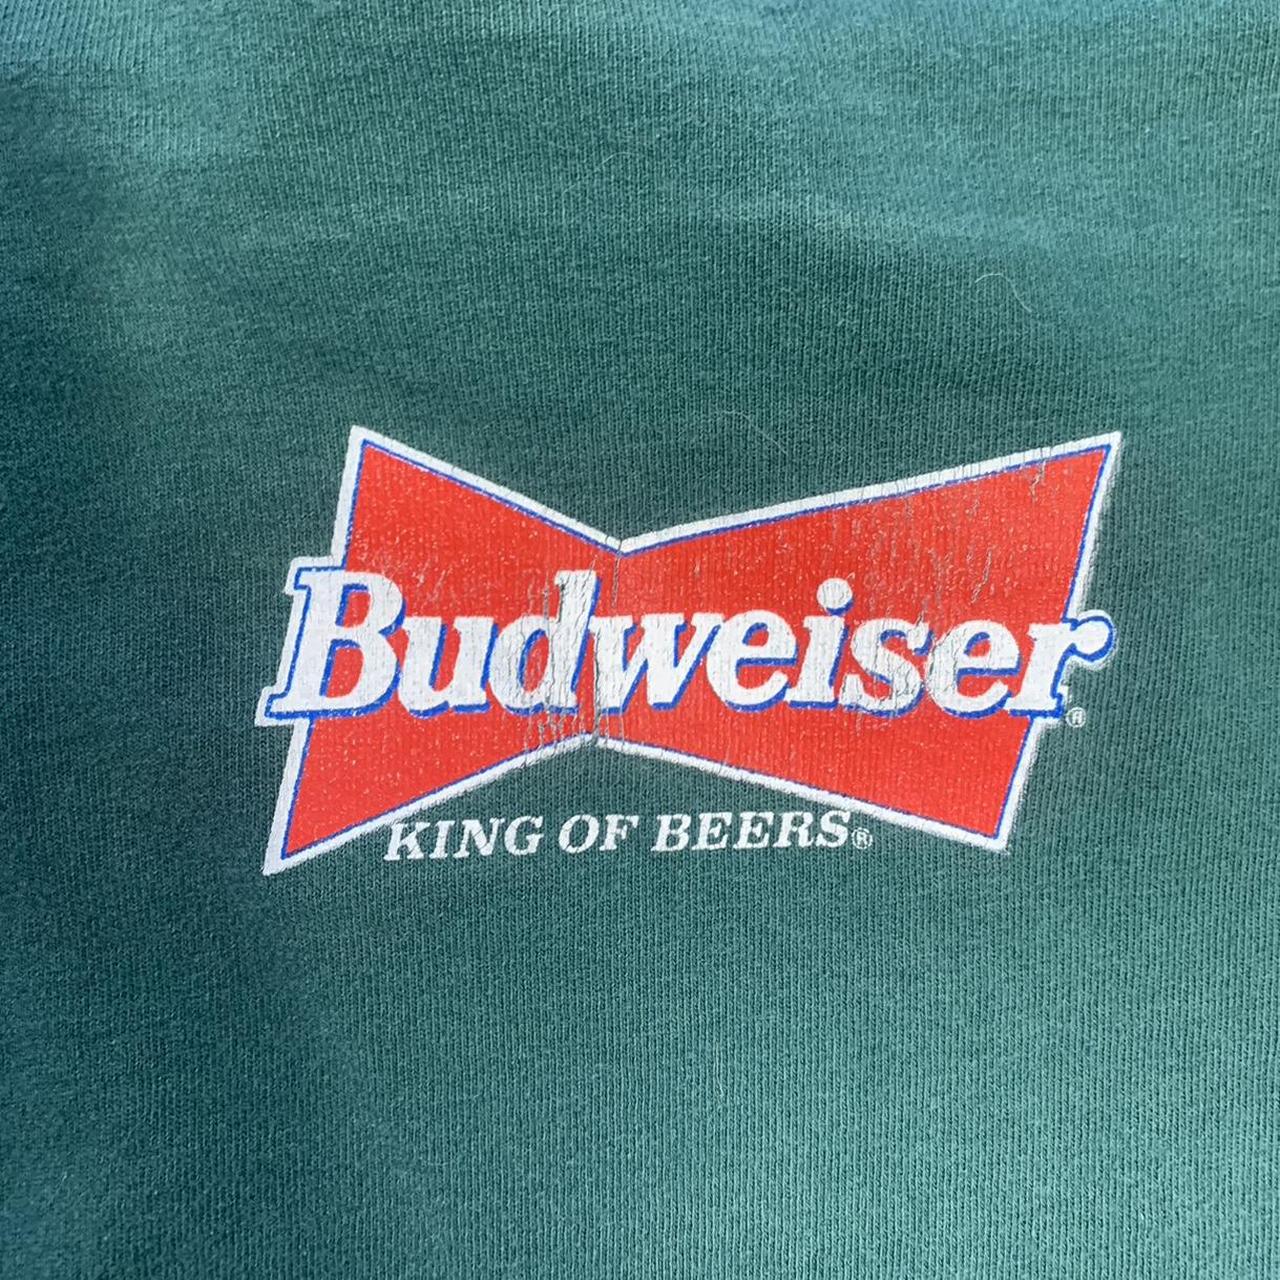 classic vintage Budweiser 1996 frogs t-shirt width: - Depop